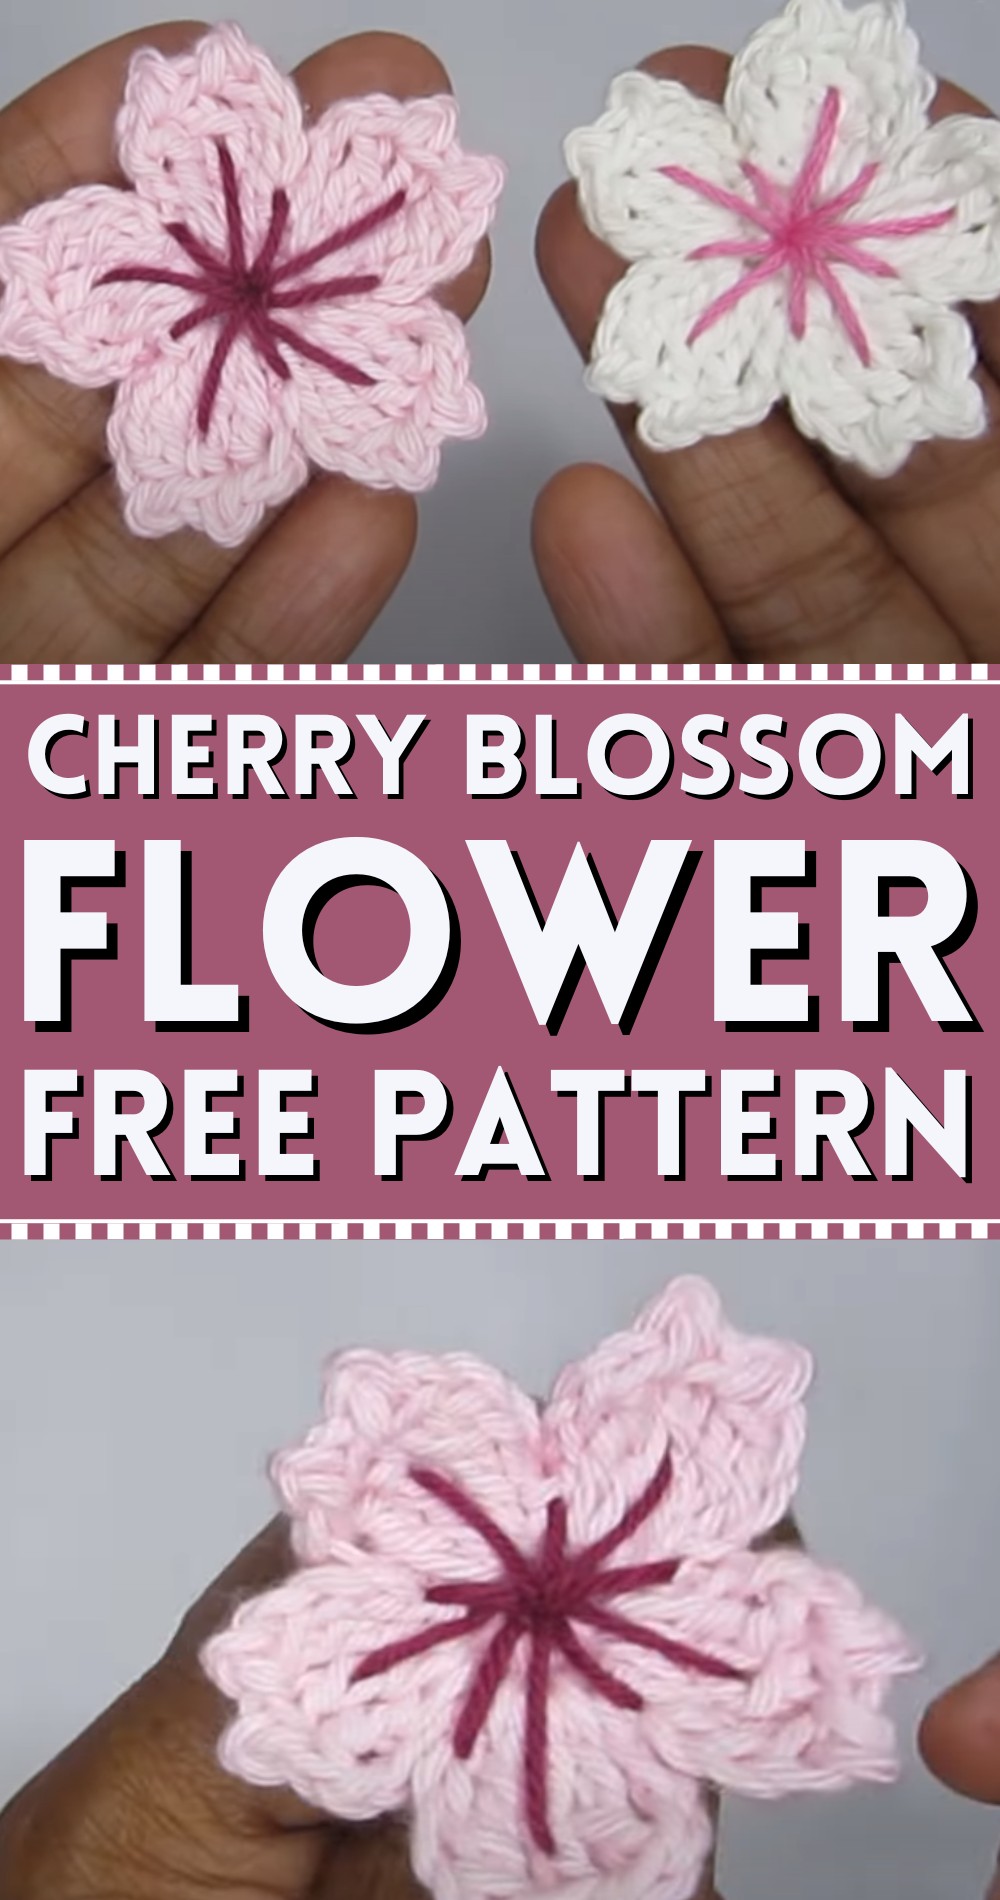 Crochet Cherry Blossom Flower